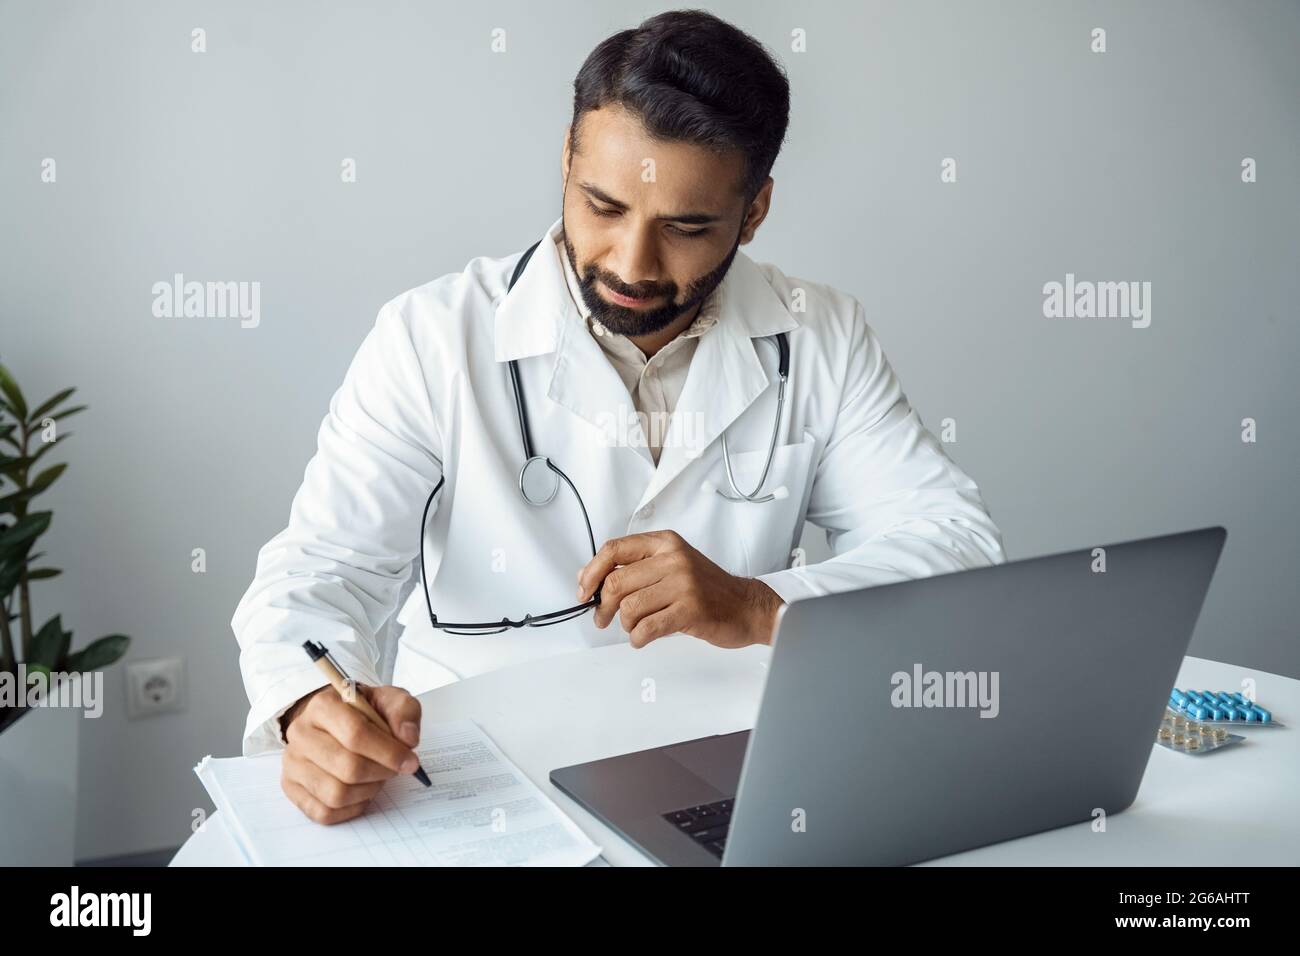 Le médecin écrit le diagnostic du patient sur la consultation en ligne, assis devant l'ordinateur portable Banque D'Images